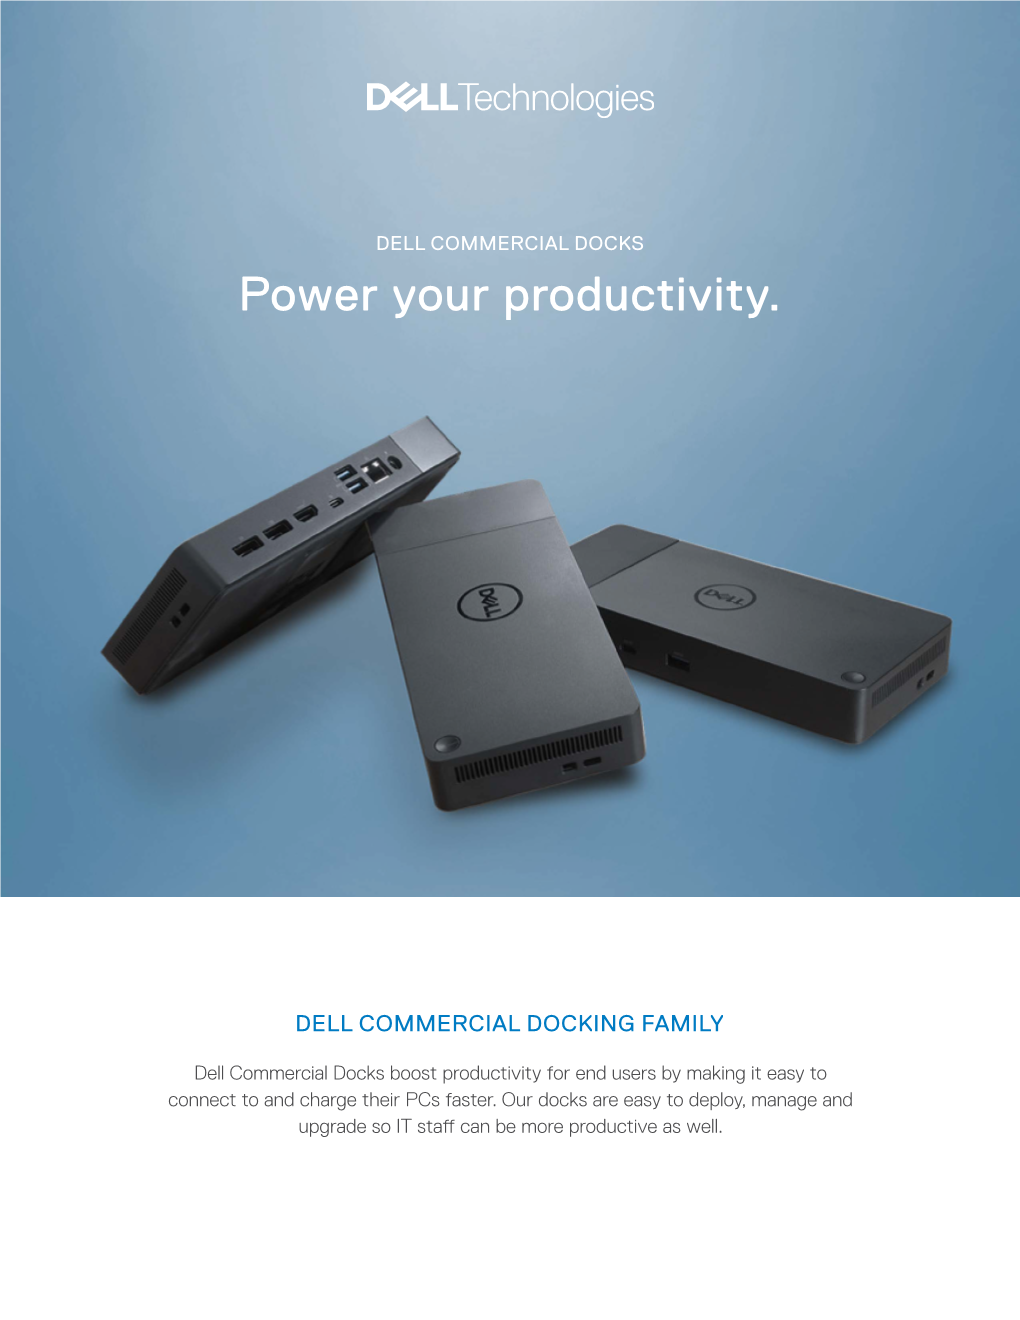 Dell Commercial Docks Family Brochure